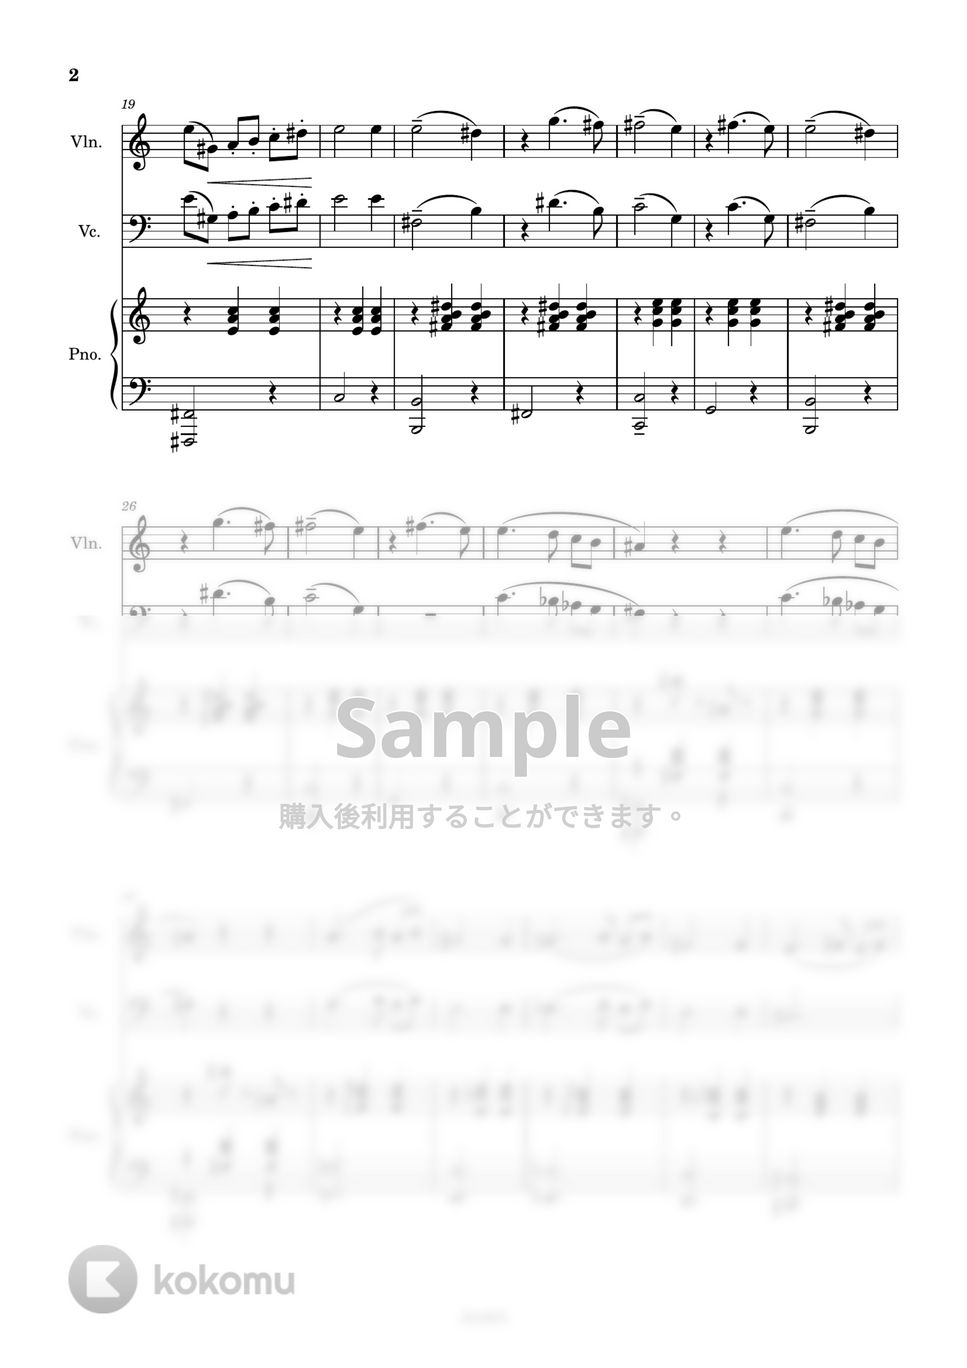 ハチャトゥリアン - 仮面舞踏会 (仮面舞踏会ピアノトリオ) by AsukA818